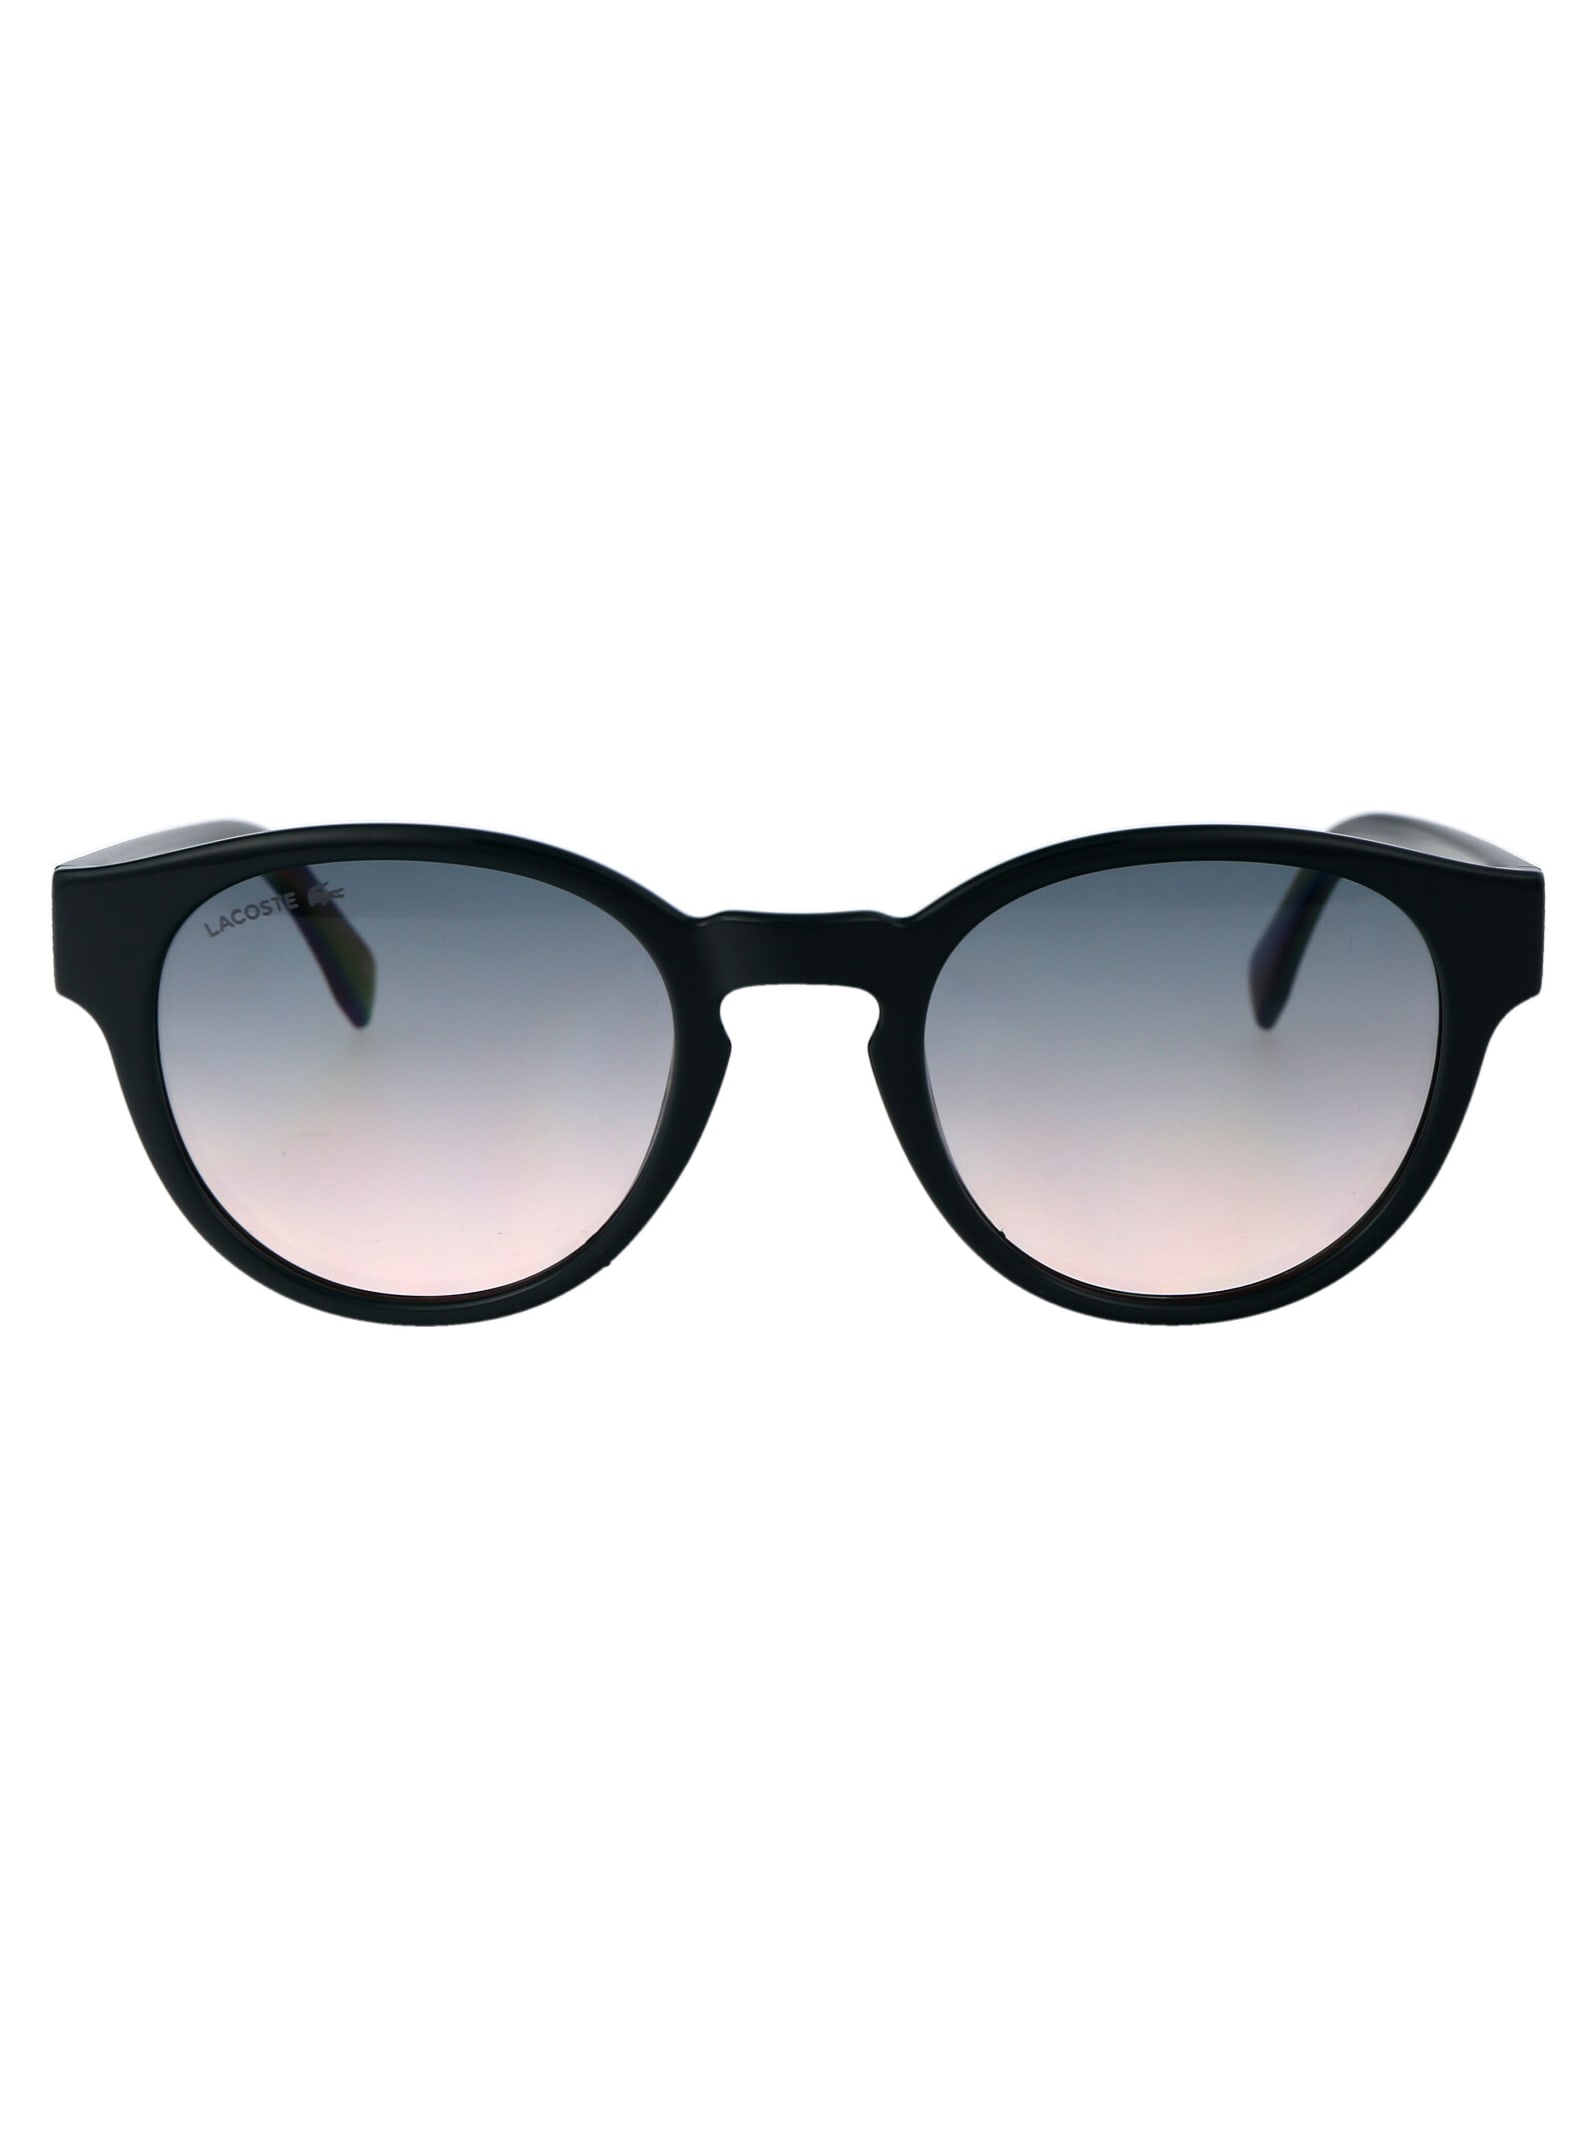 L6000s Sunglasses